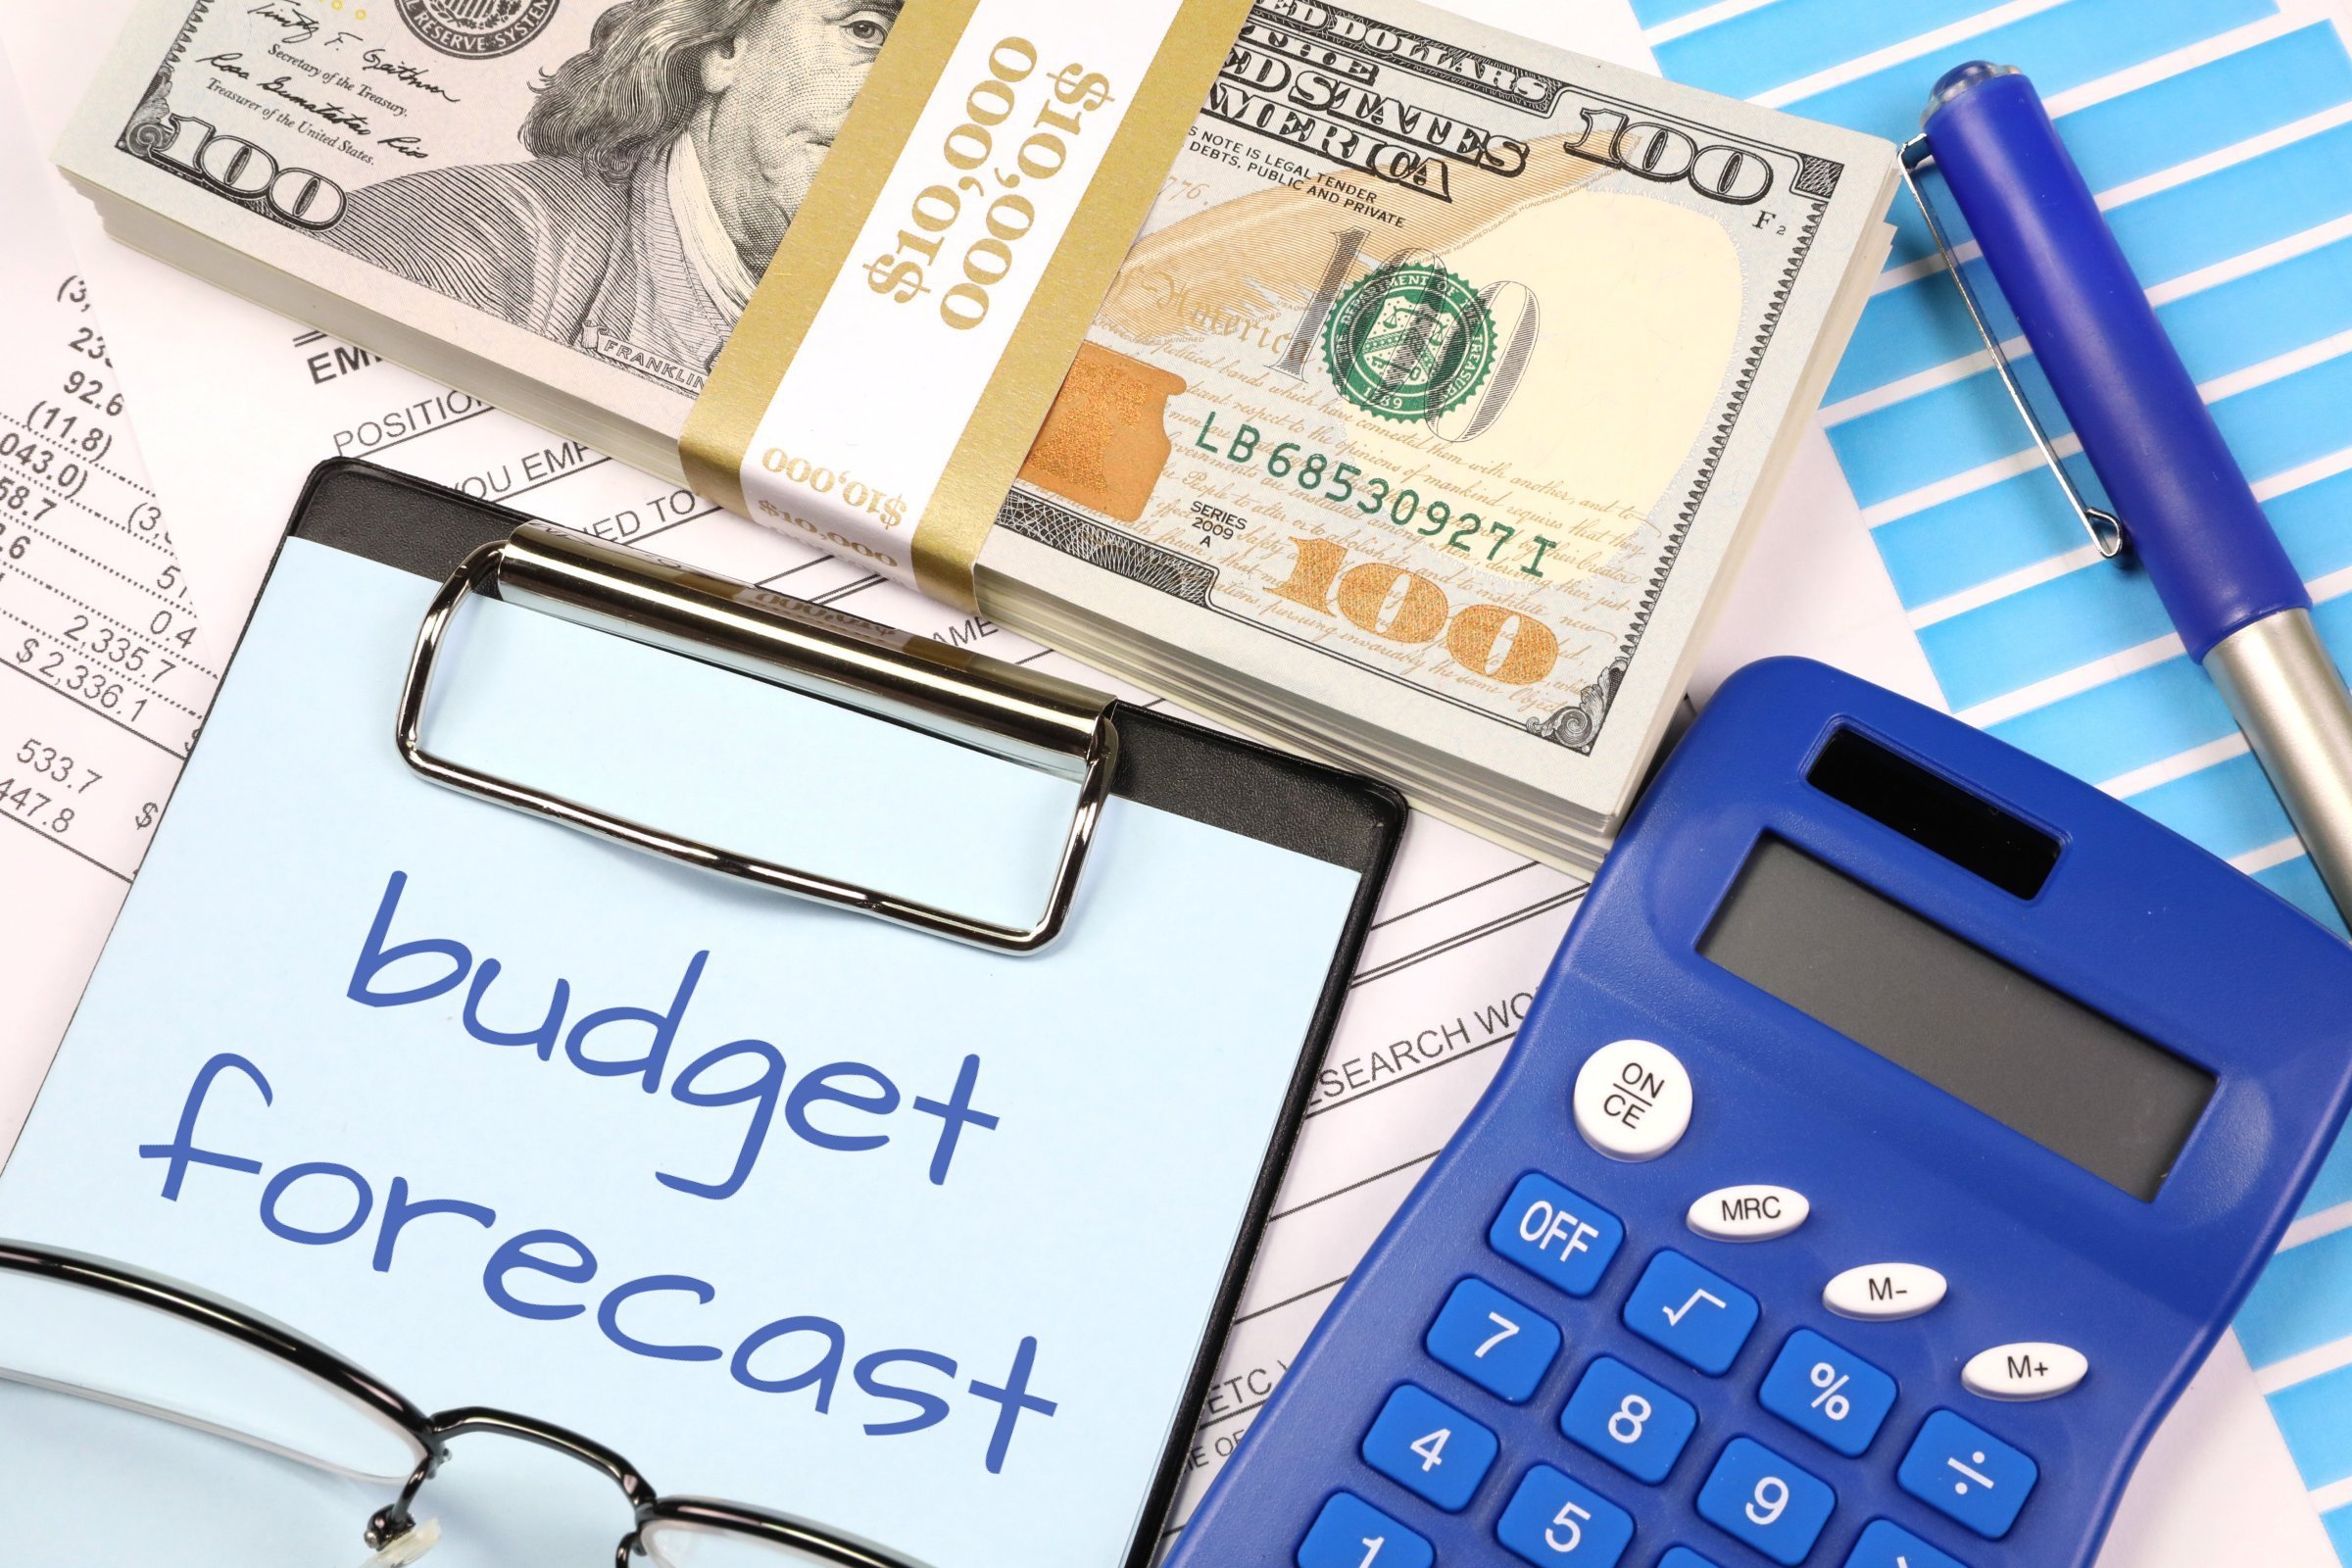 budget forecast